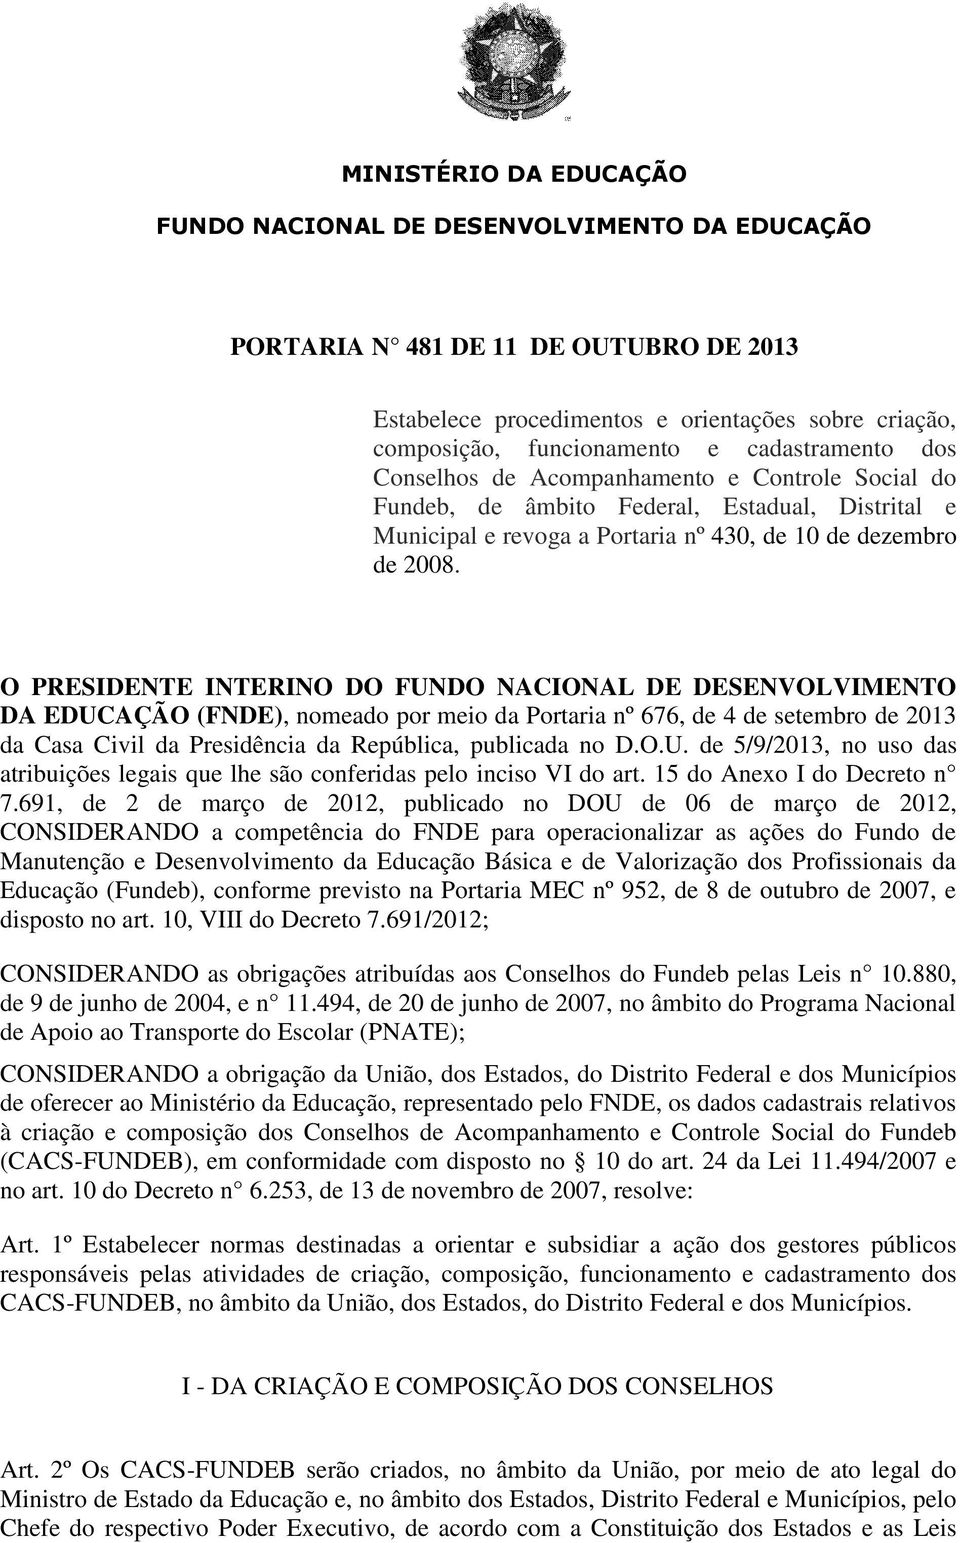 O PRESIDENTE INTERINO DO FUNDO NACIONAL DE DESENVOLVIMENTO DA EDUCAÇÃO (FNDE), nomeado por meio da Portaria nº 676, de 4 de setembro de 2013 da Casa Civil da Presidência da República, publicada no D.